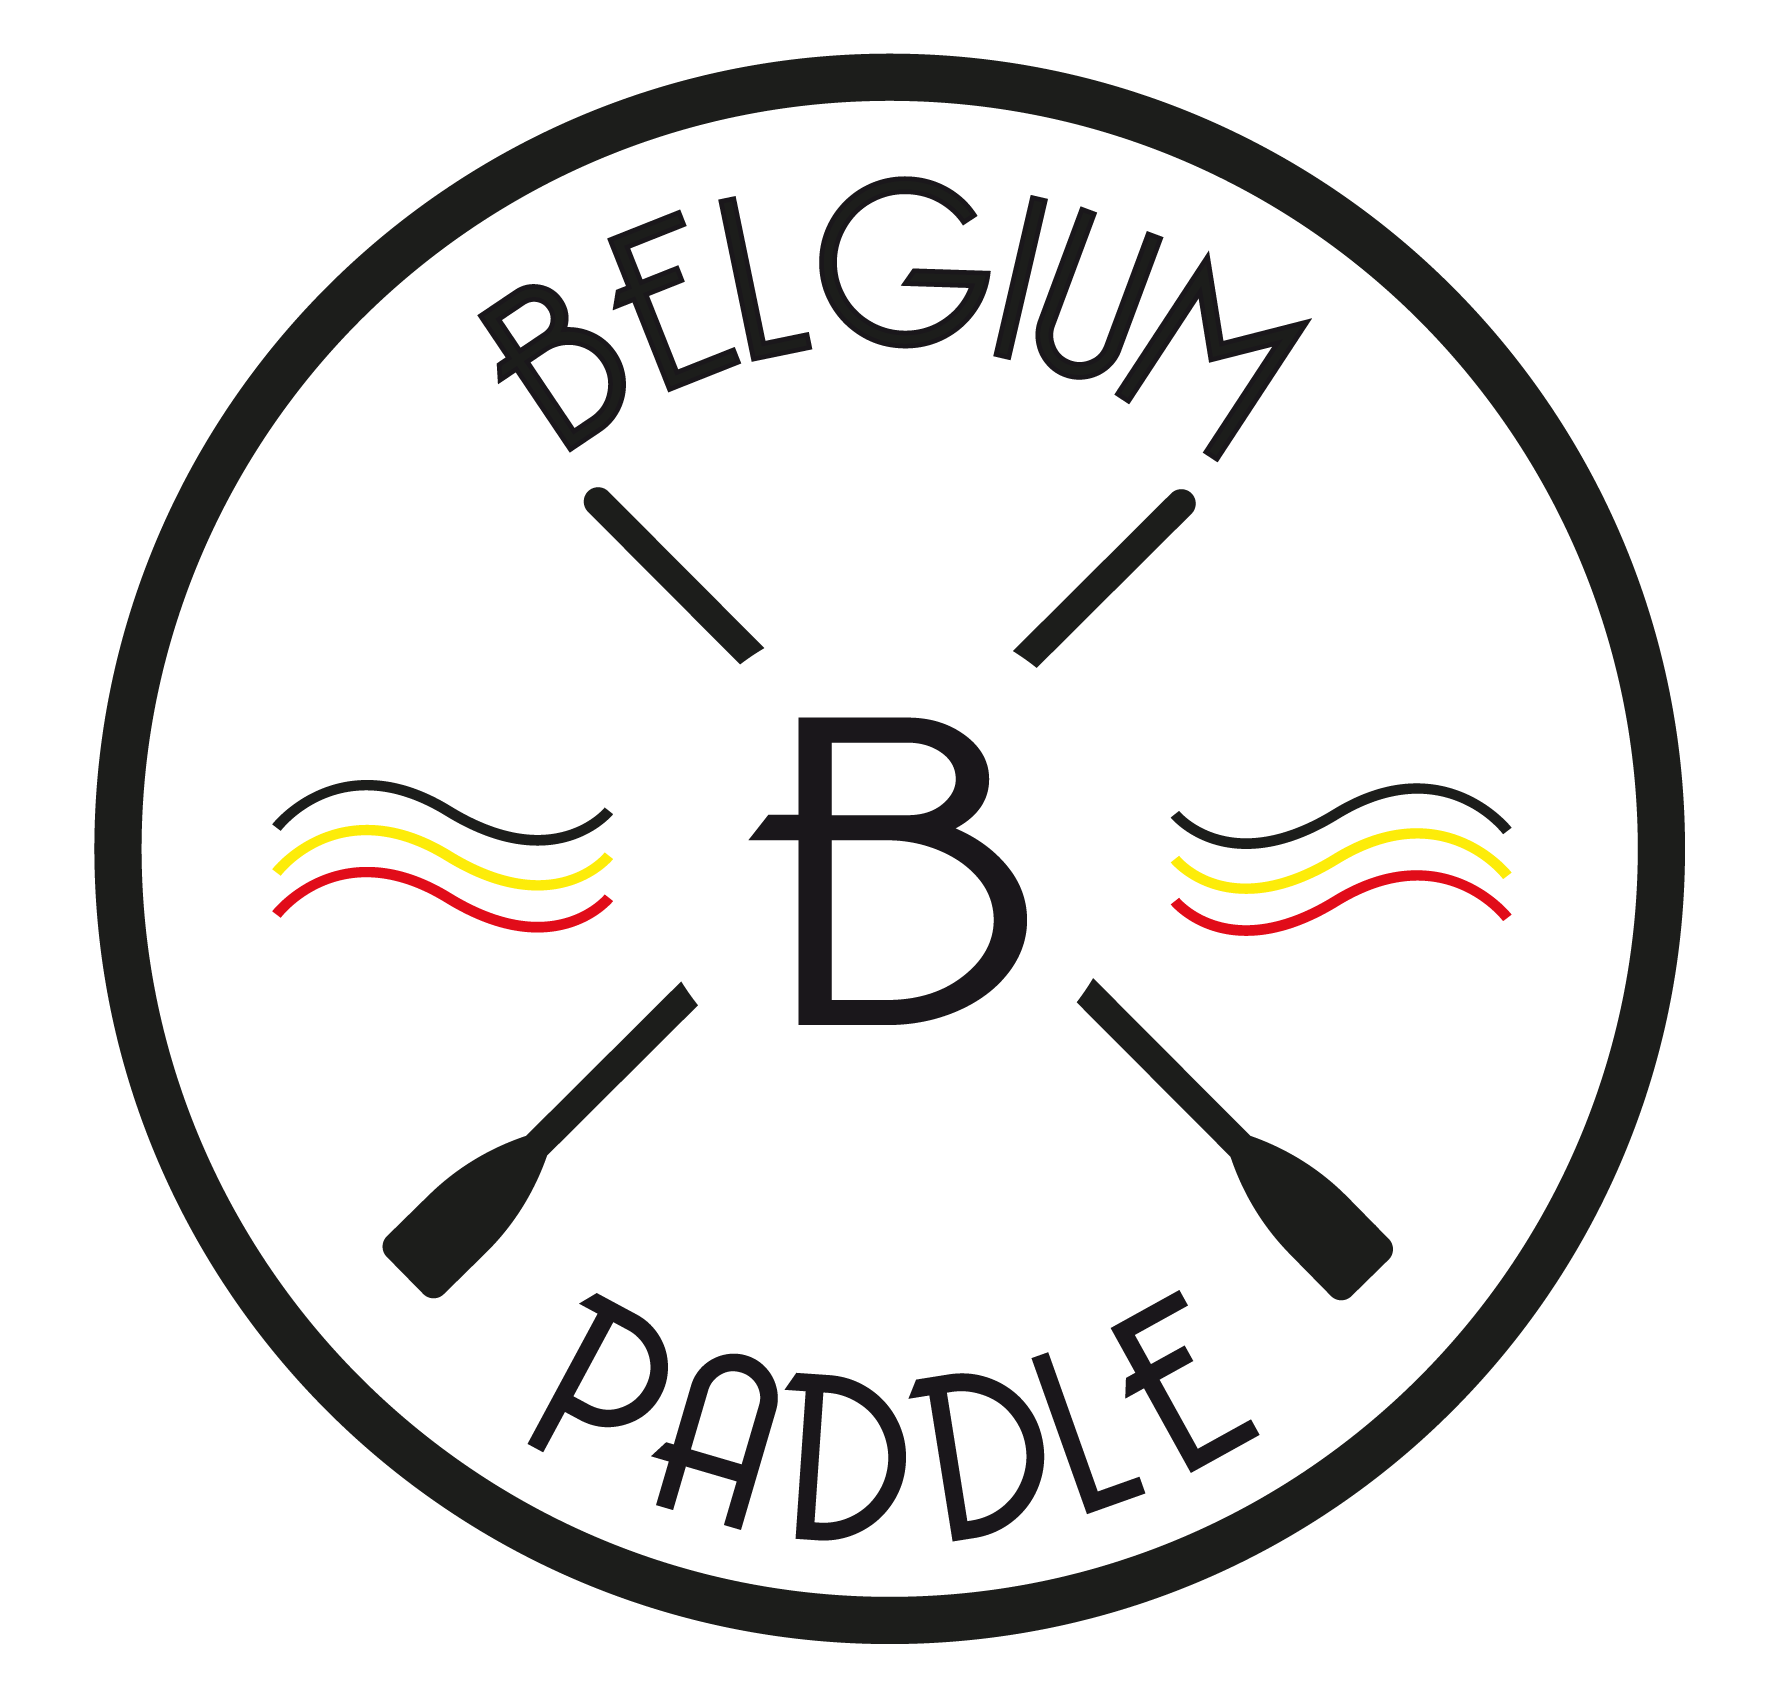 Belgium Paddle in Sud Press